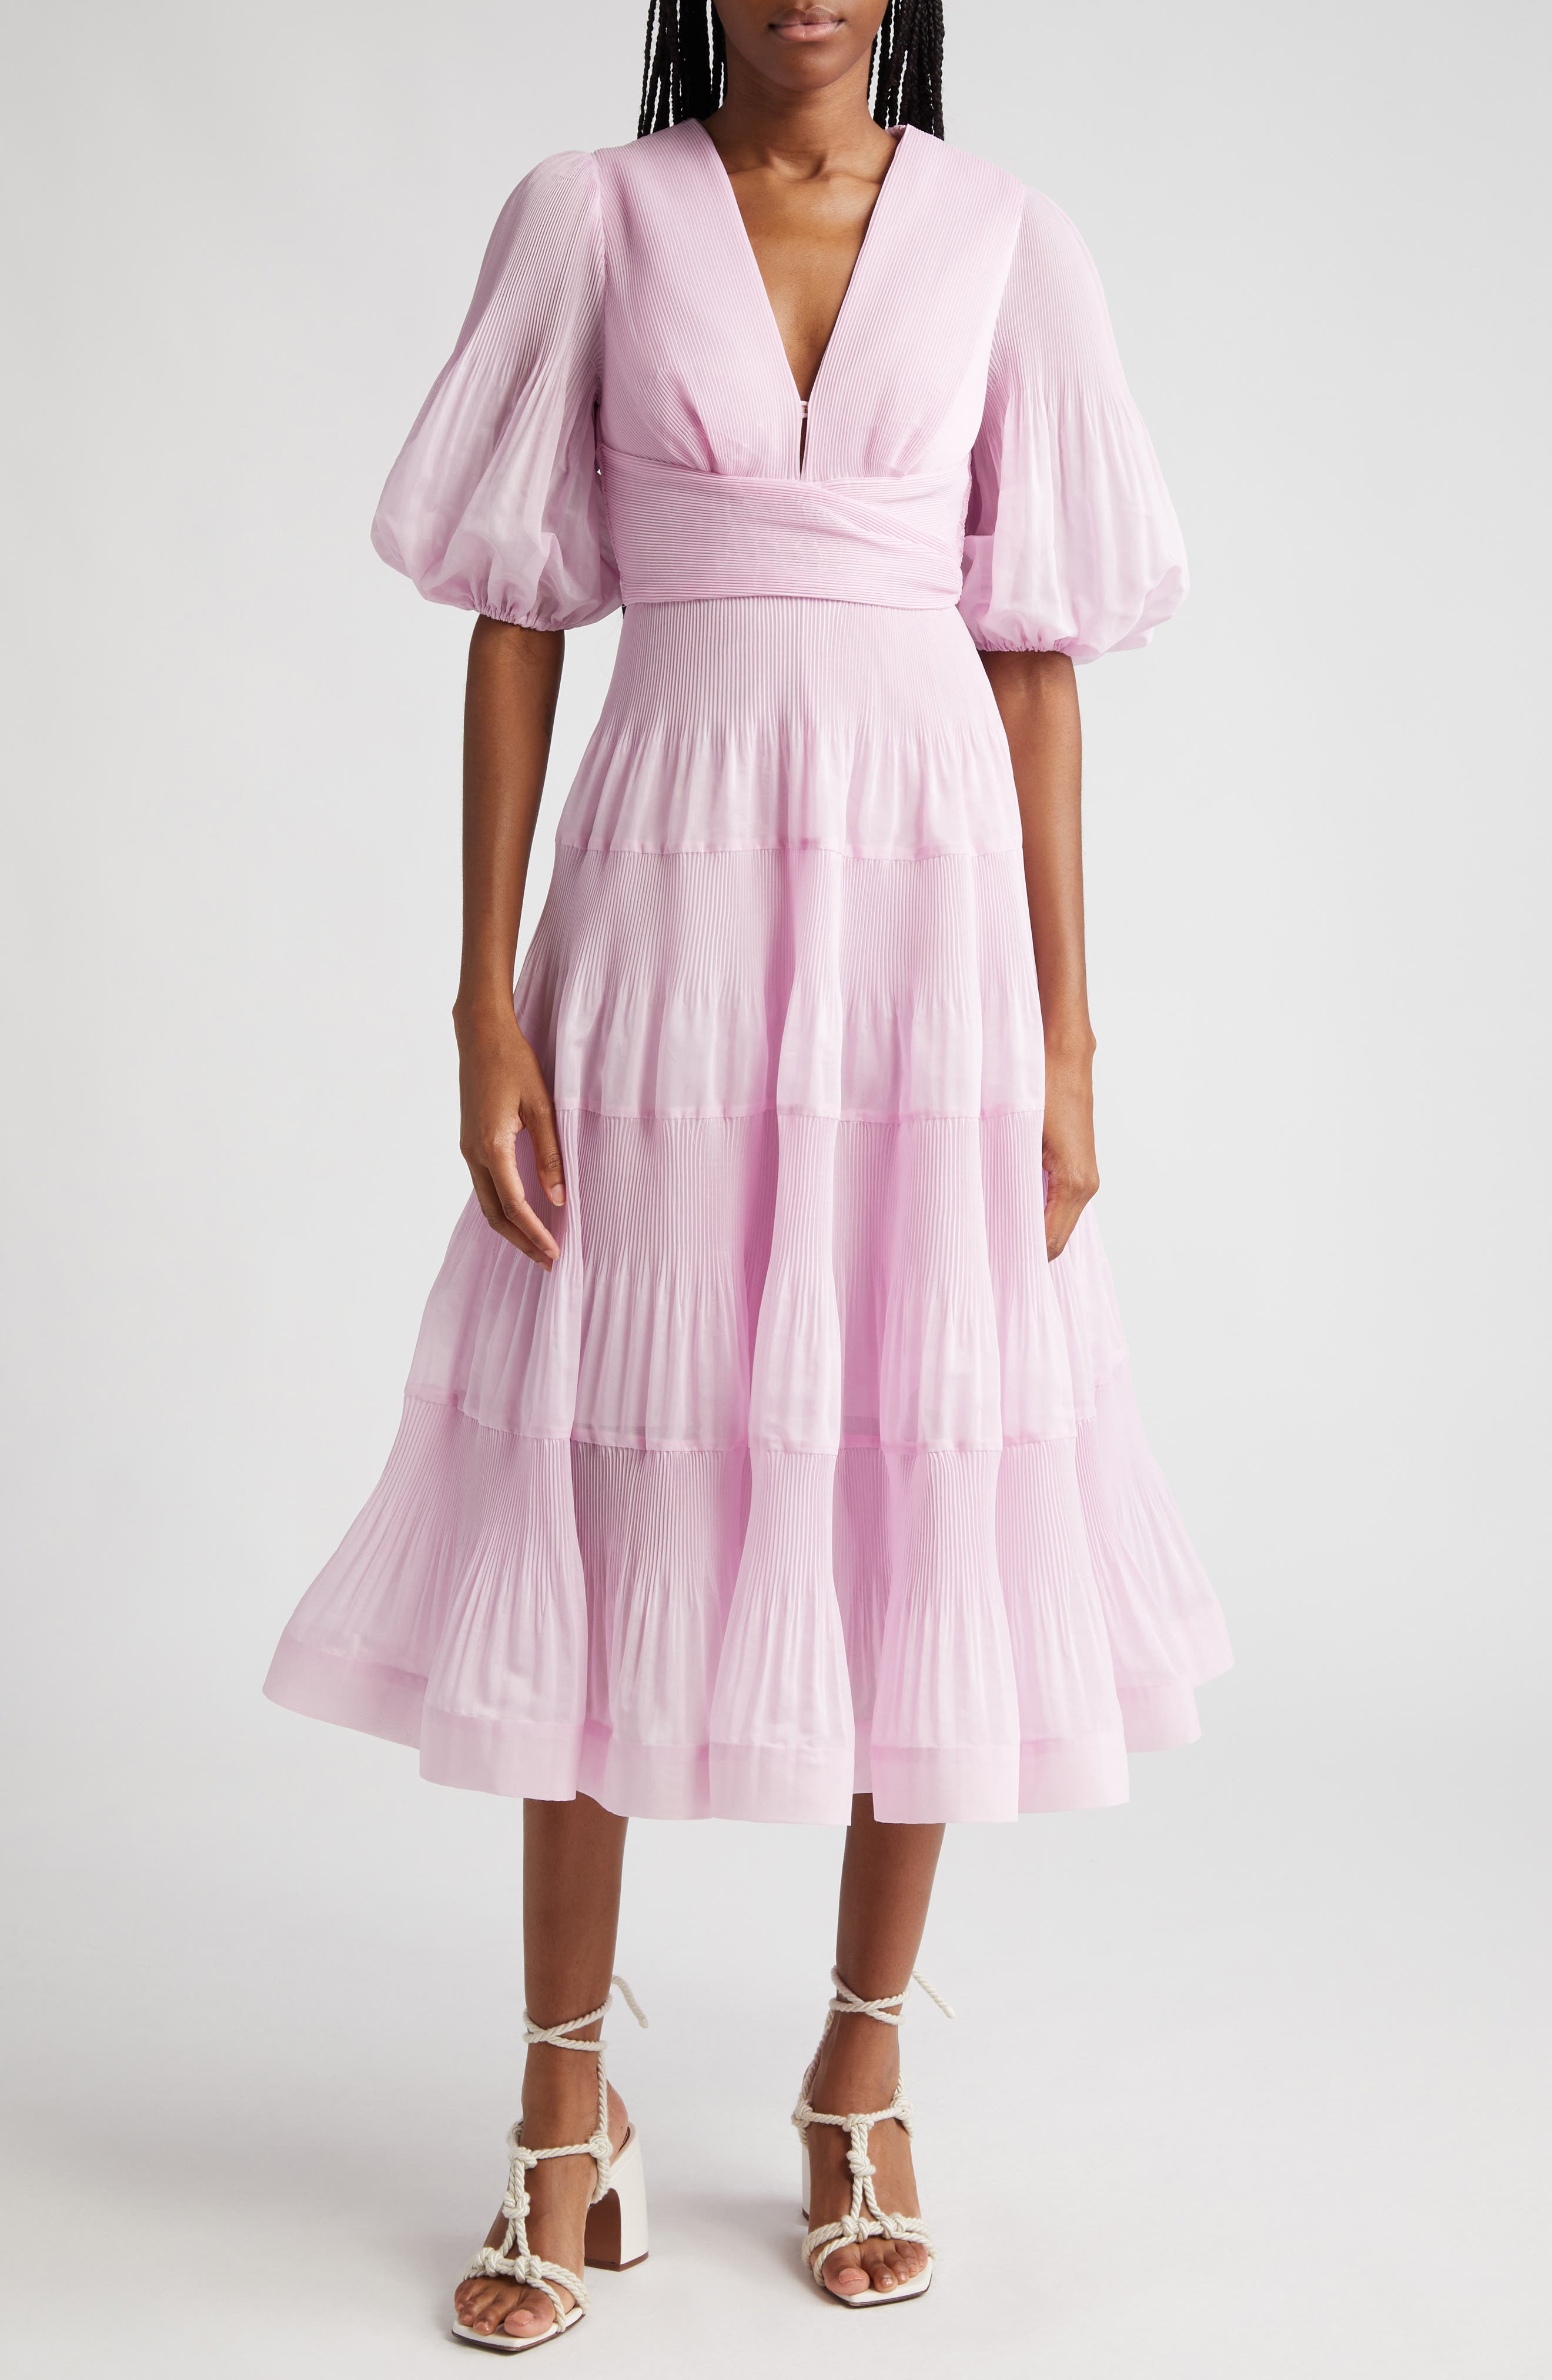 pink designer dress